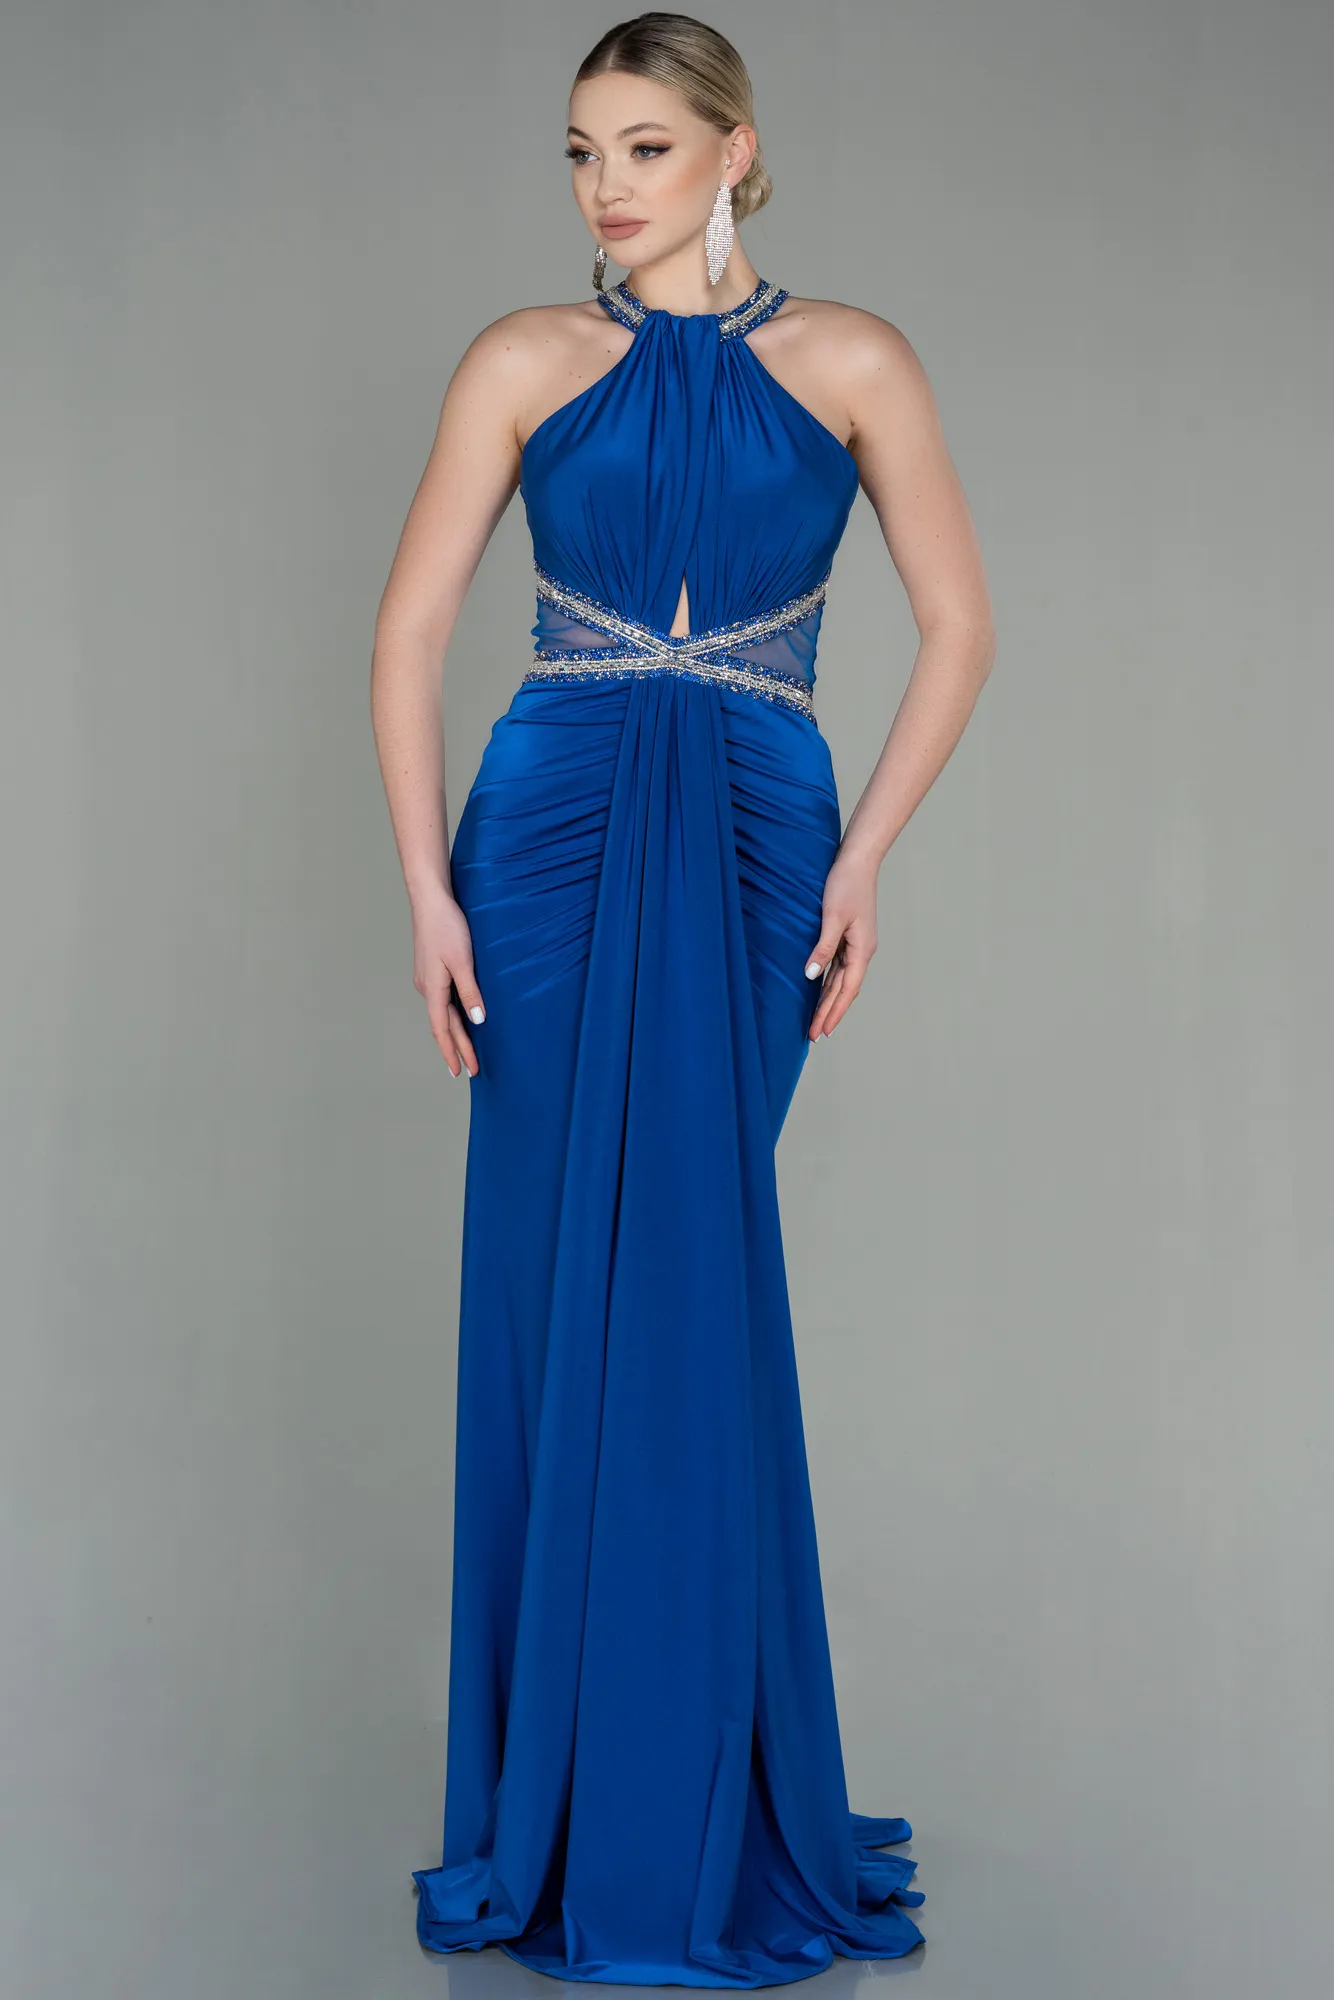 Sax Blue-Long Mermaid Prom Dress ABU2940